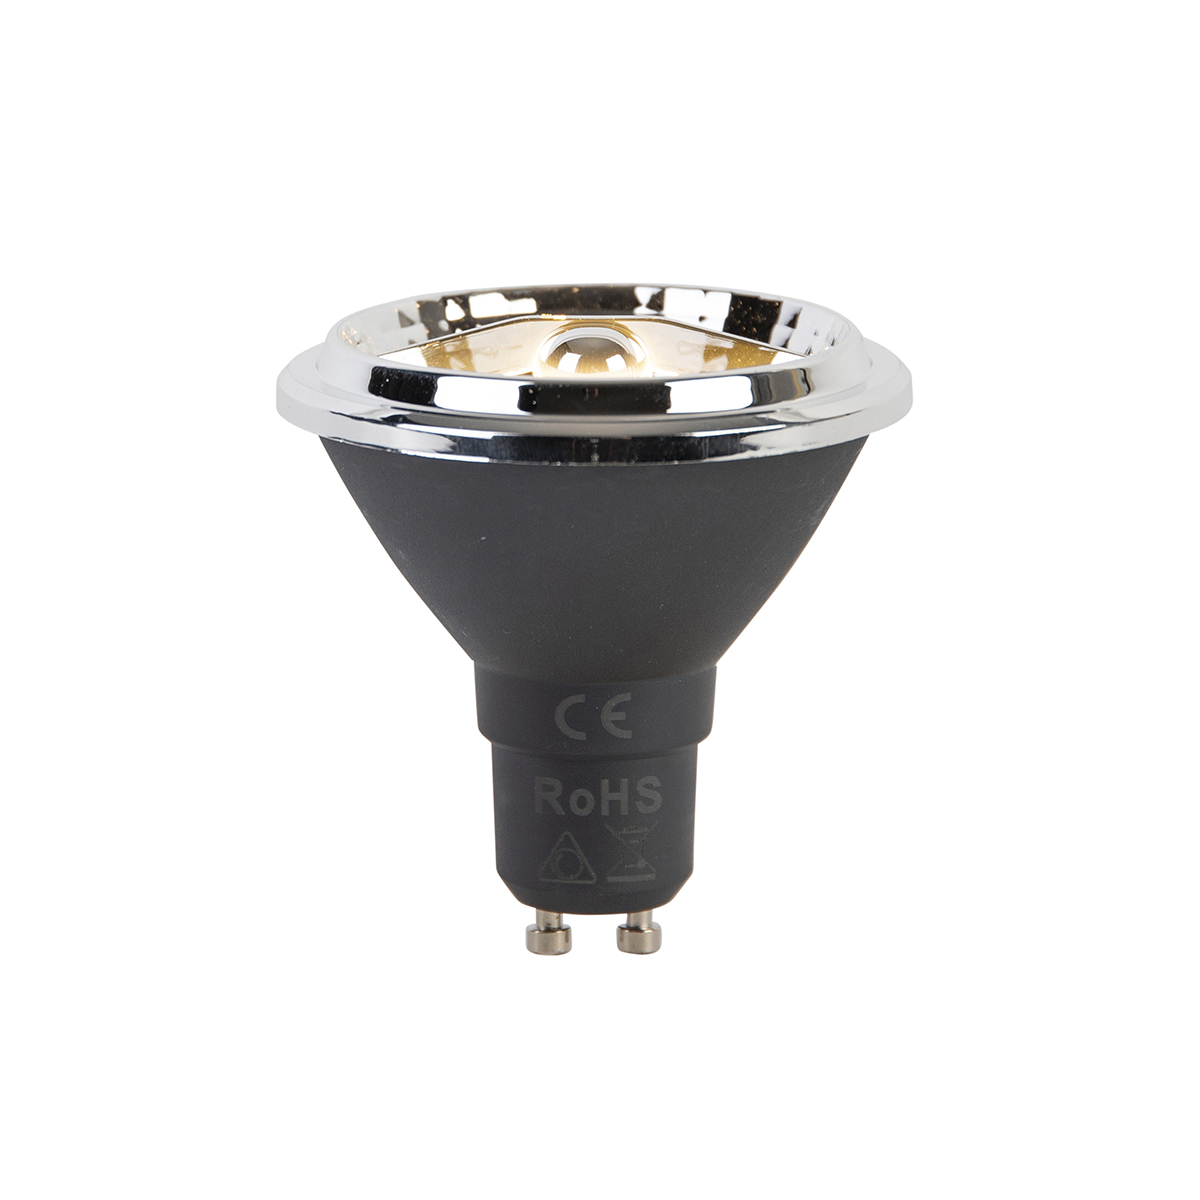 GU10 szabályozható LED lámpa AR70 6W 450 lm 2700K